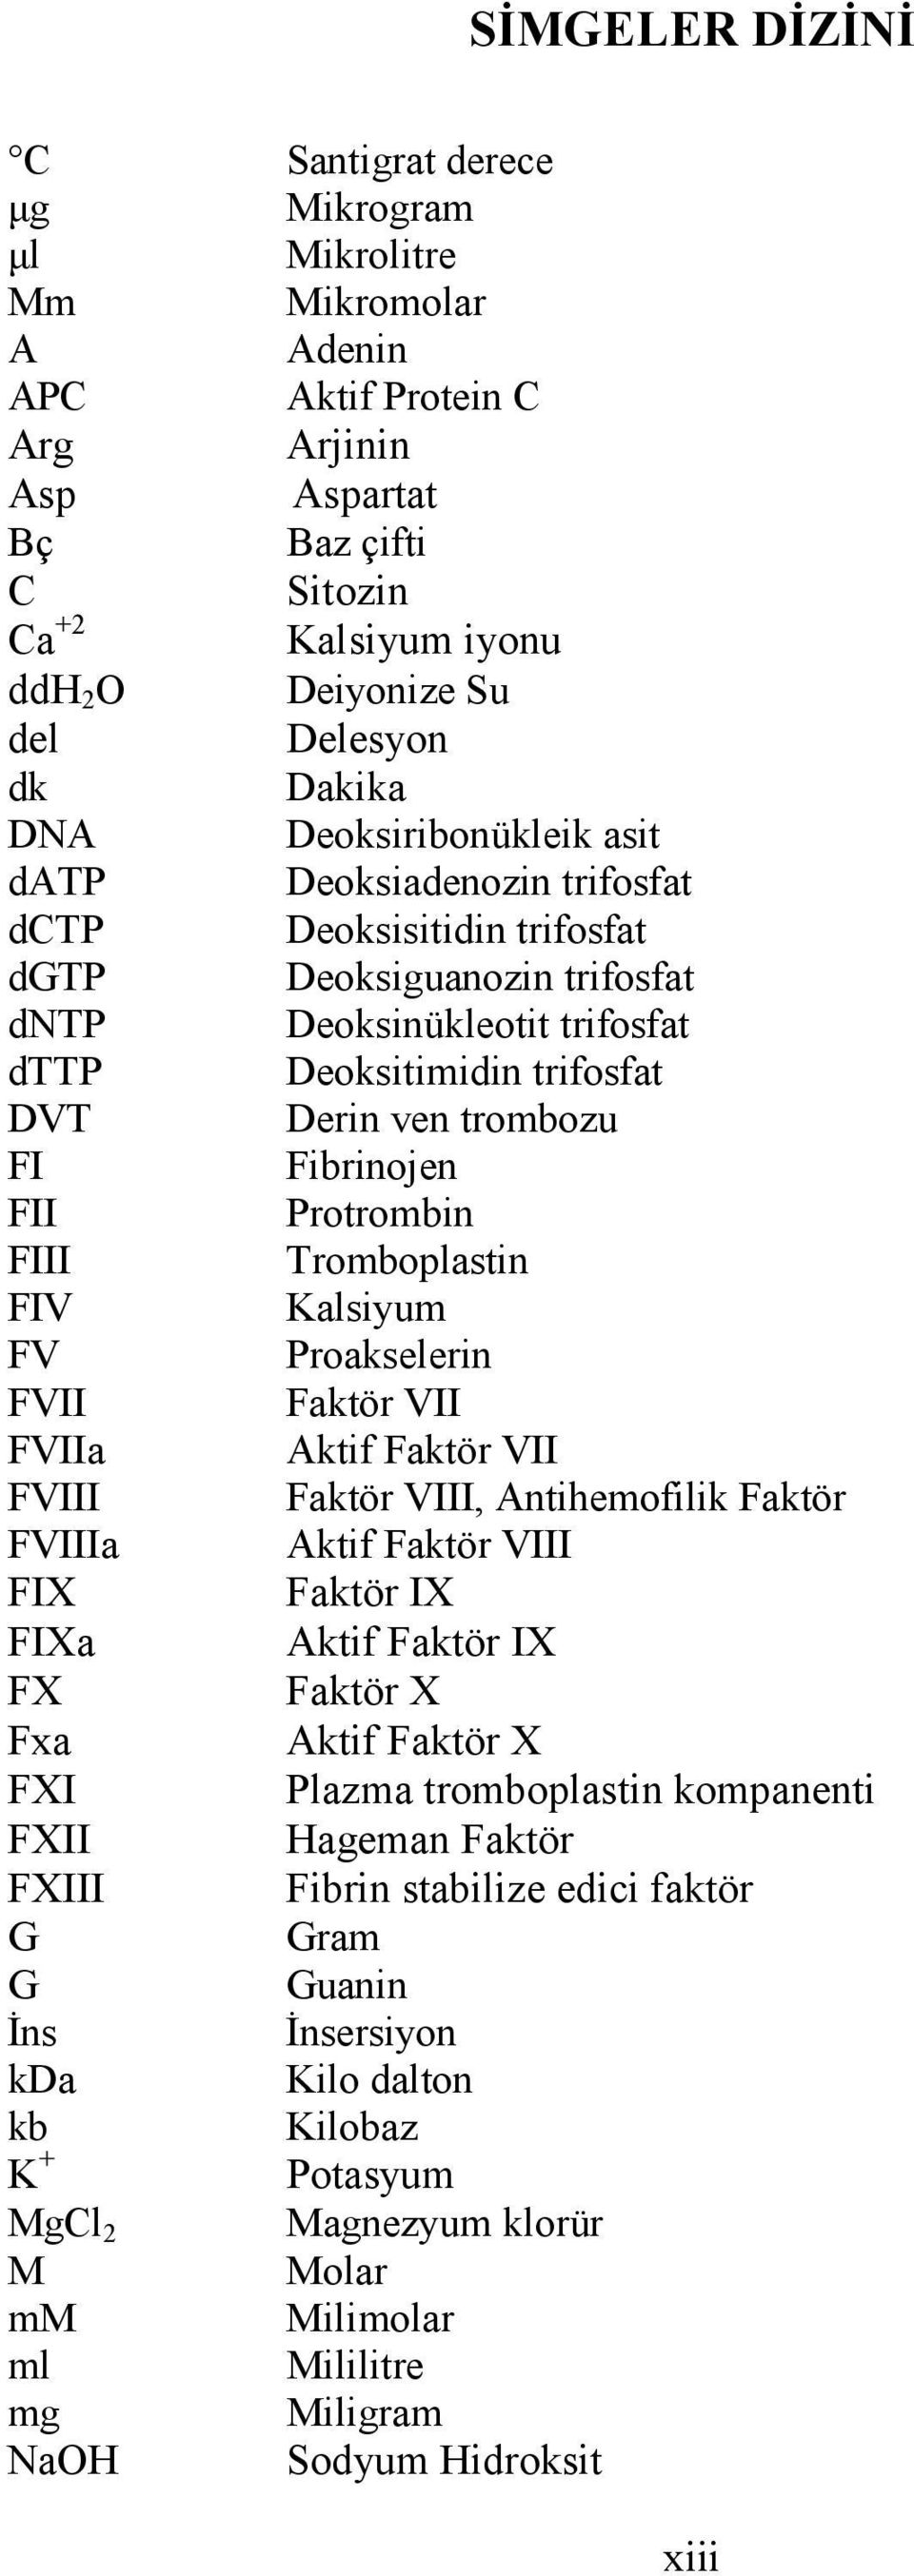 Derin ven trombozu FI Fibrinojen FII Protrombin FIII Tromboplastin FIV Kalsiyum FV Proakselerin FVII Faktör VII FVIIa Aktif Faktör VII FVIII Faktör VIII, Antihemofilik Faktör FVIIIa Aktif Faktör VIII